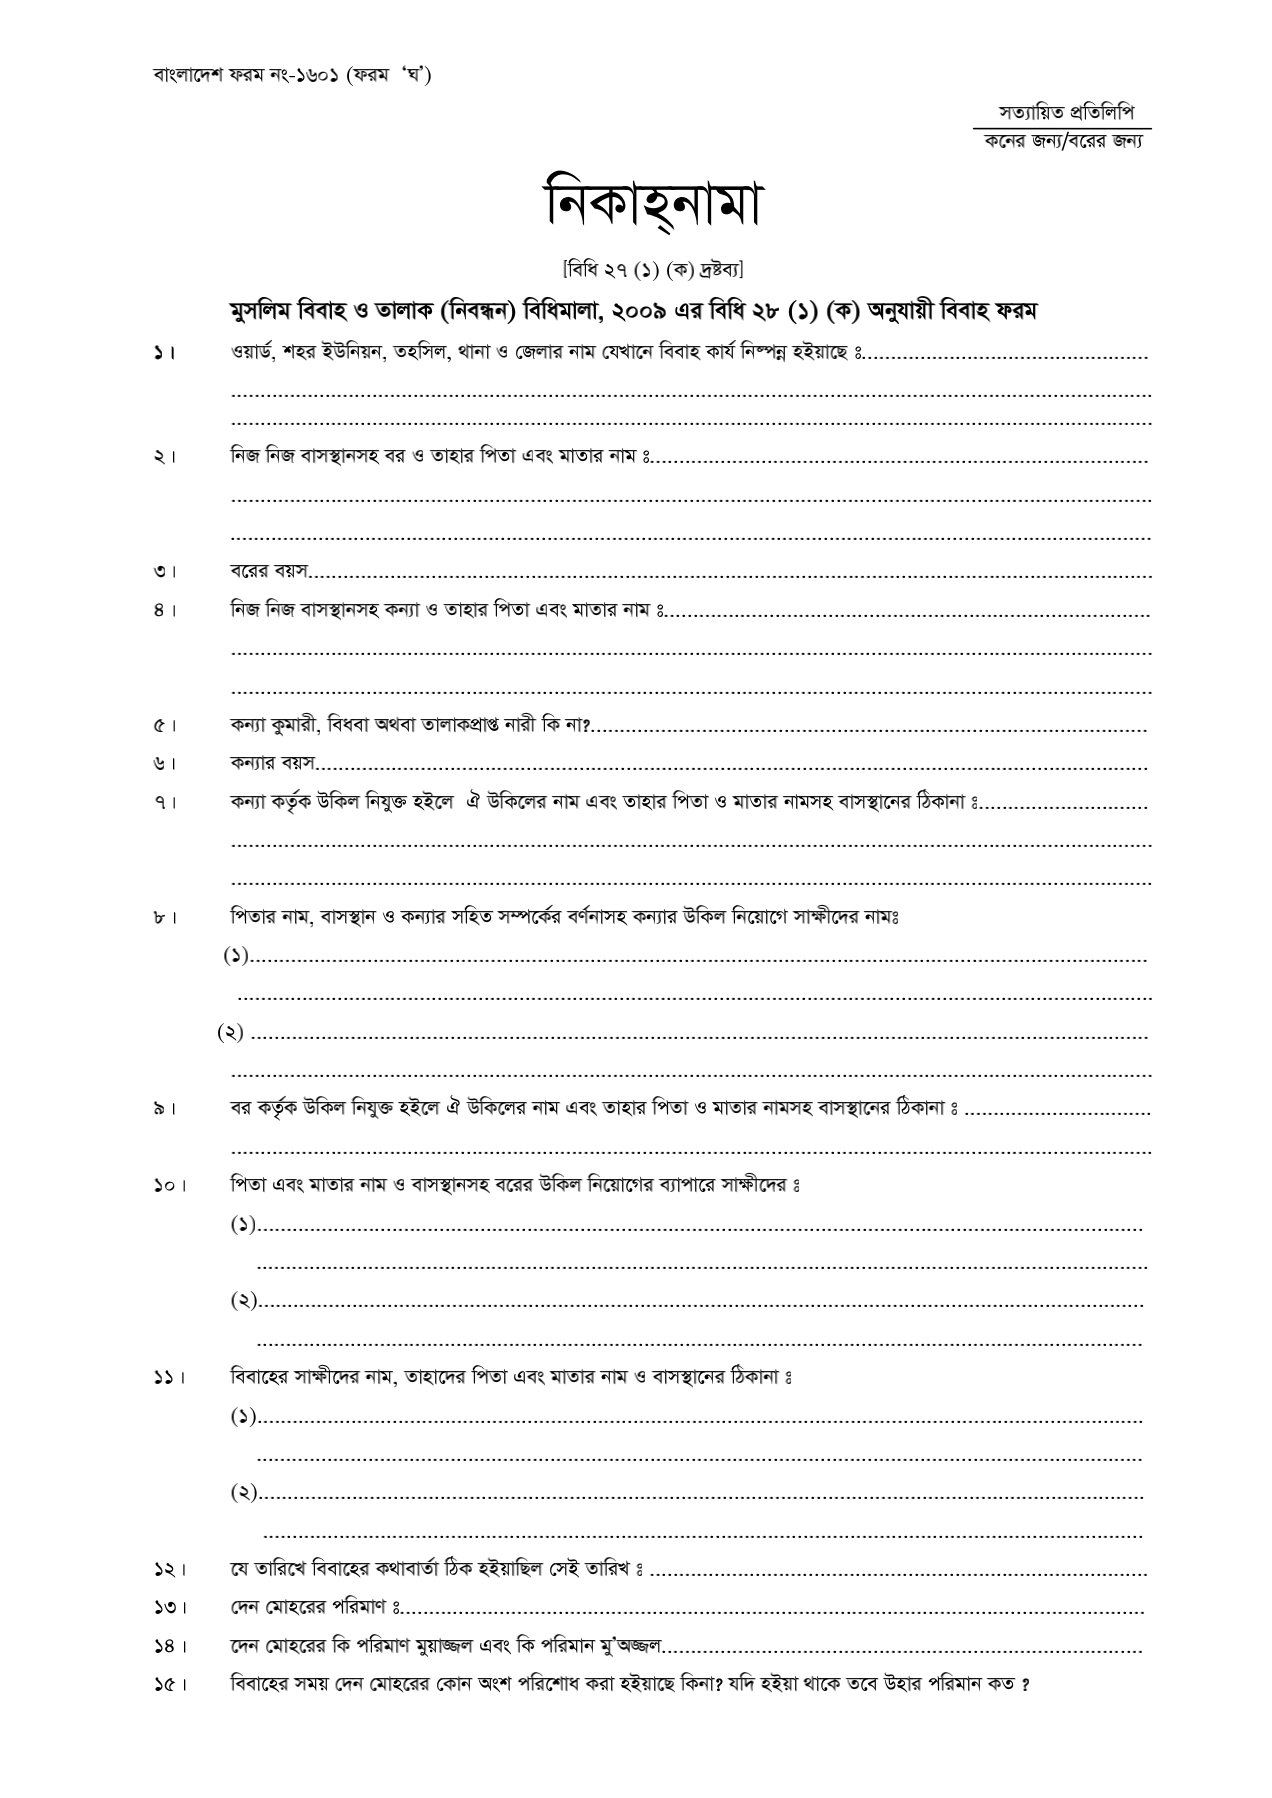 মুসলিম বিবাহ রেজিস্ট্রেশন ফরম pdf |বিয়ের রেজিস্ট্রি ফরম pdf | Marriage registration form in Bangladesh Pdf